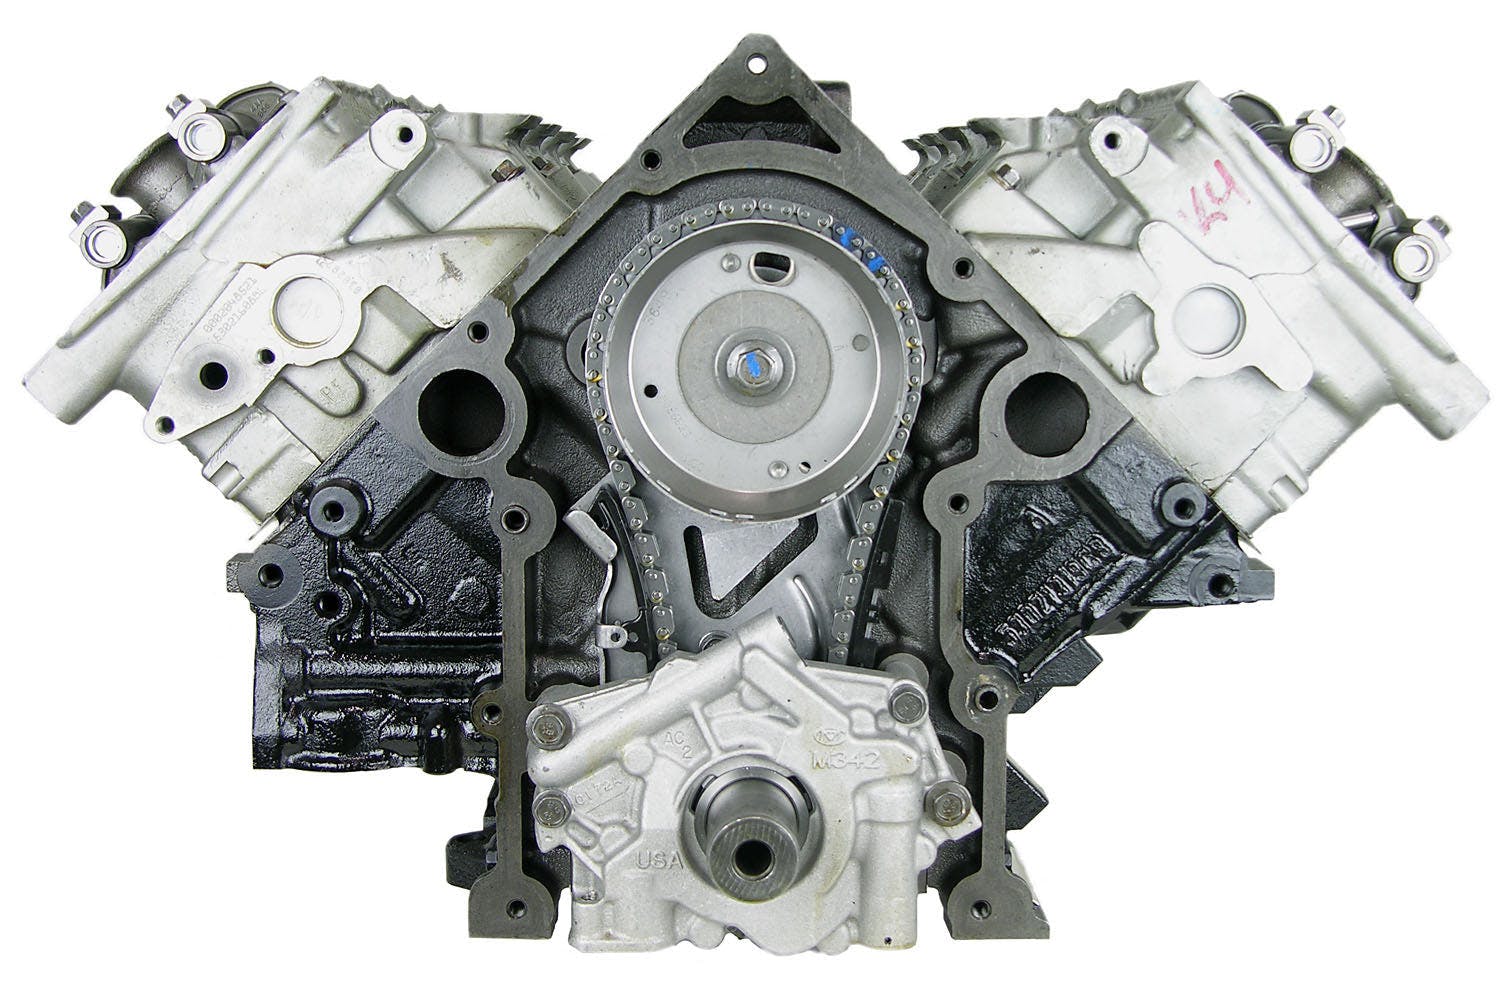 5.7L V8 Engine for 2006-2008 Chrysler Aspen/Dodge Durango, Ram 1500